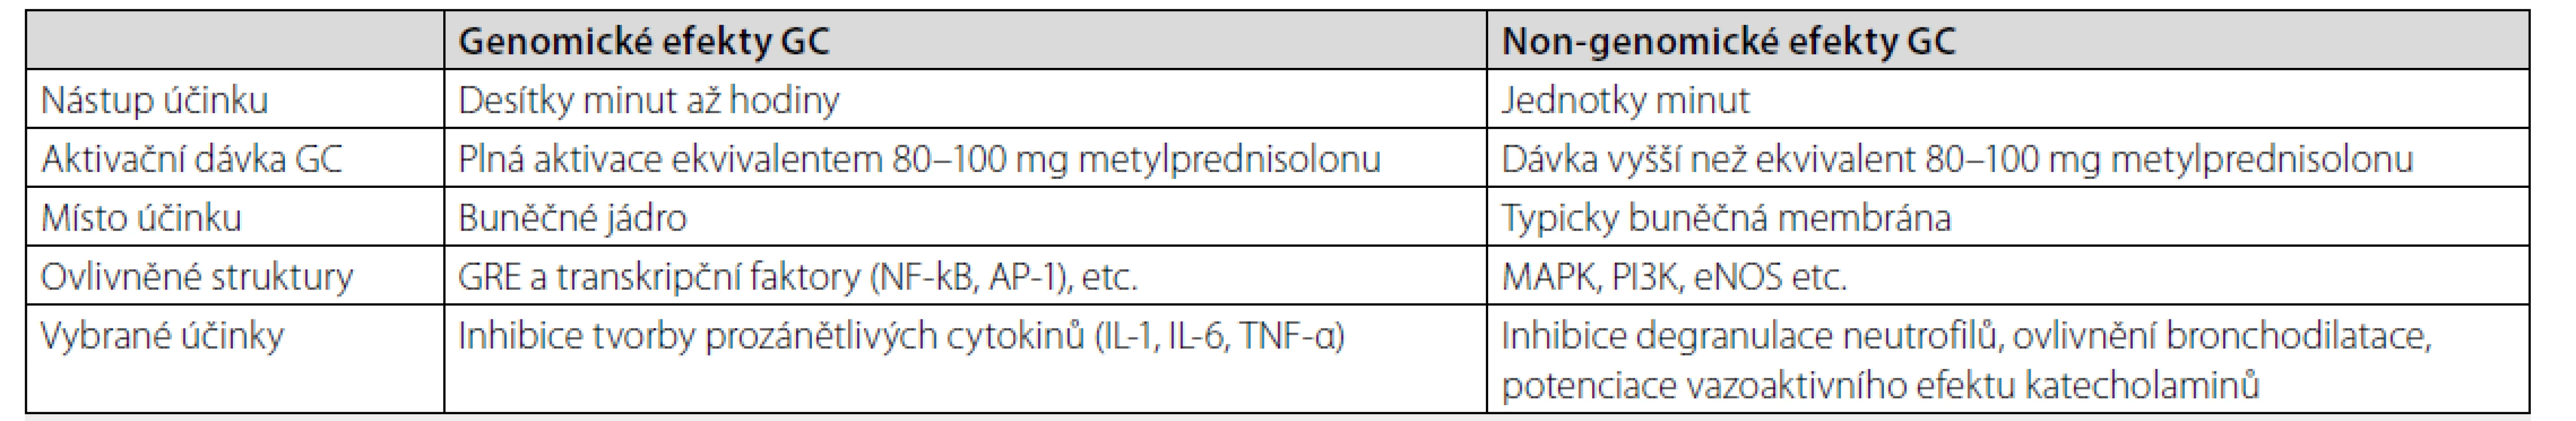 Shrnutí genomických a negenomických účinků kortikoidů [5, 6, 17]